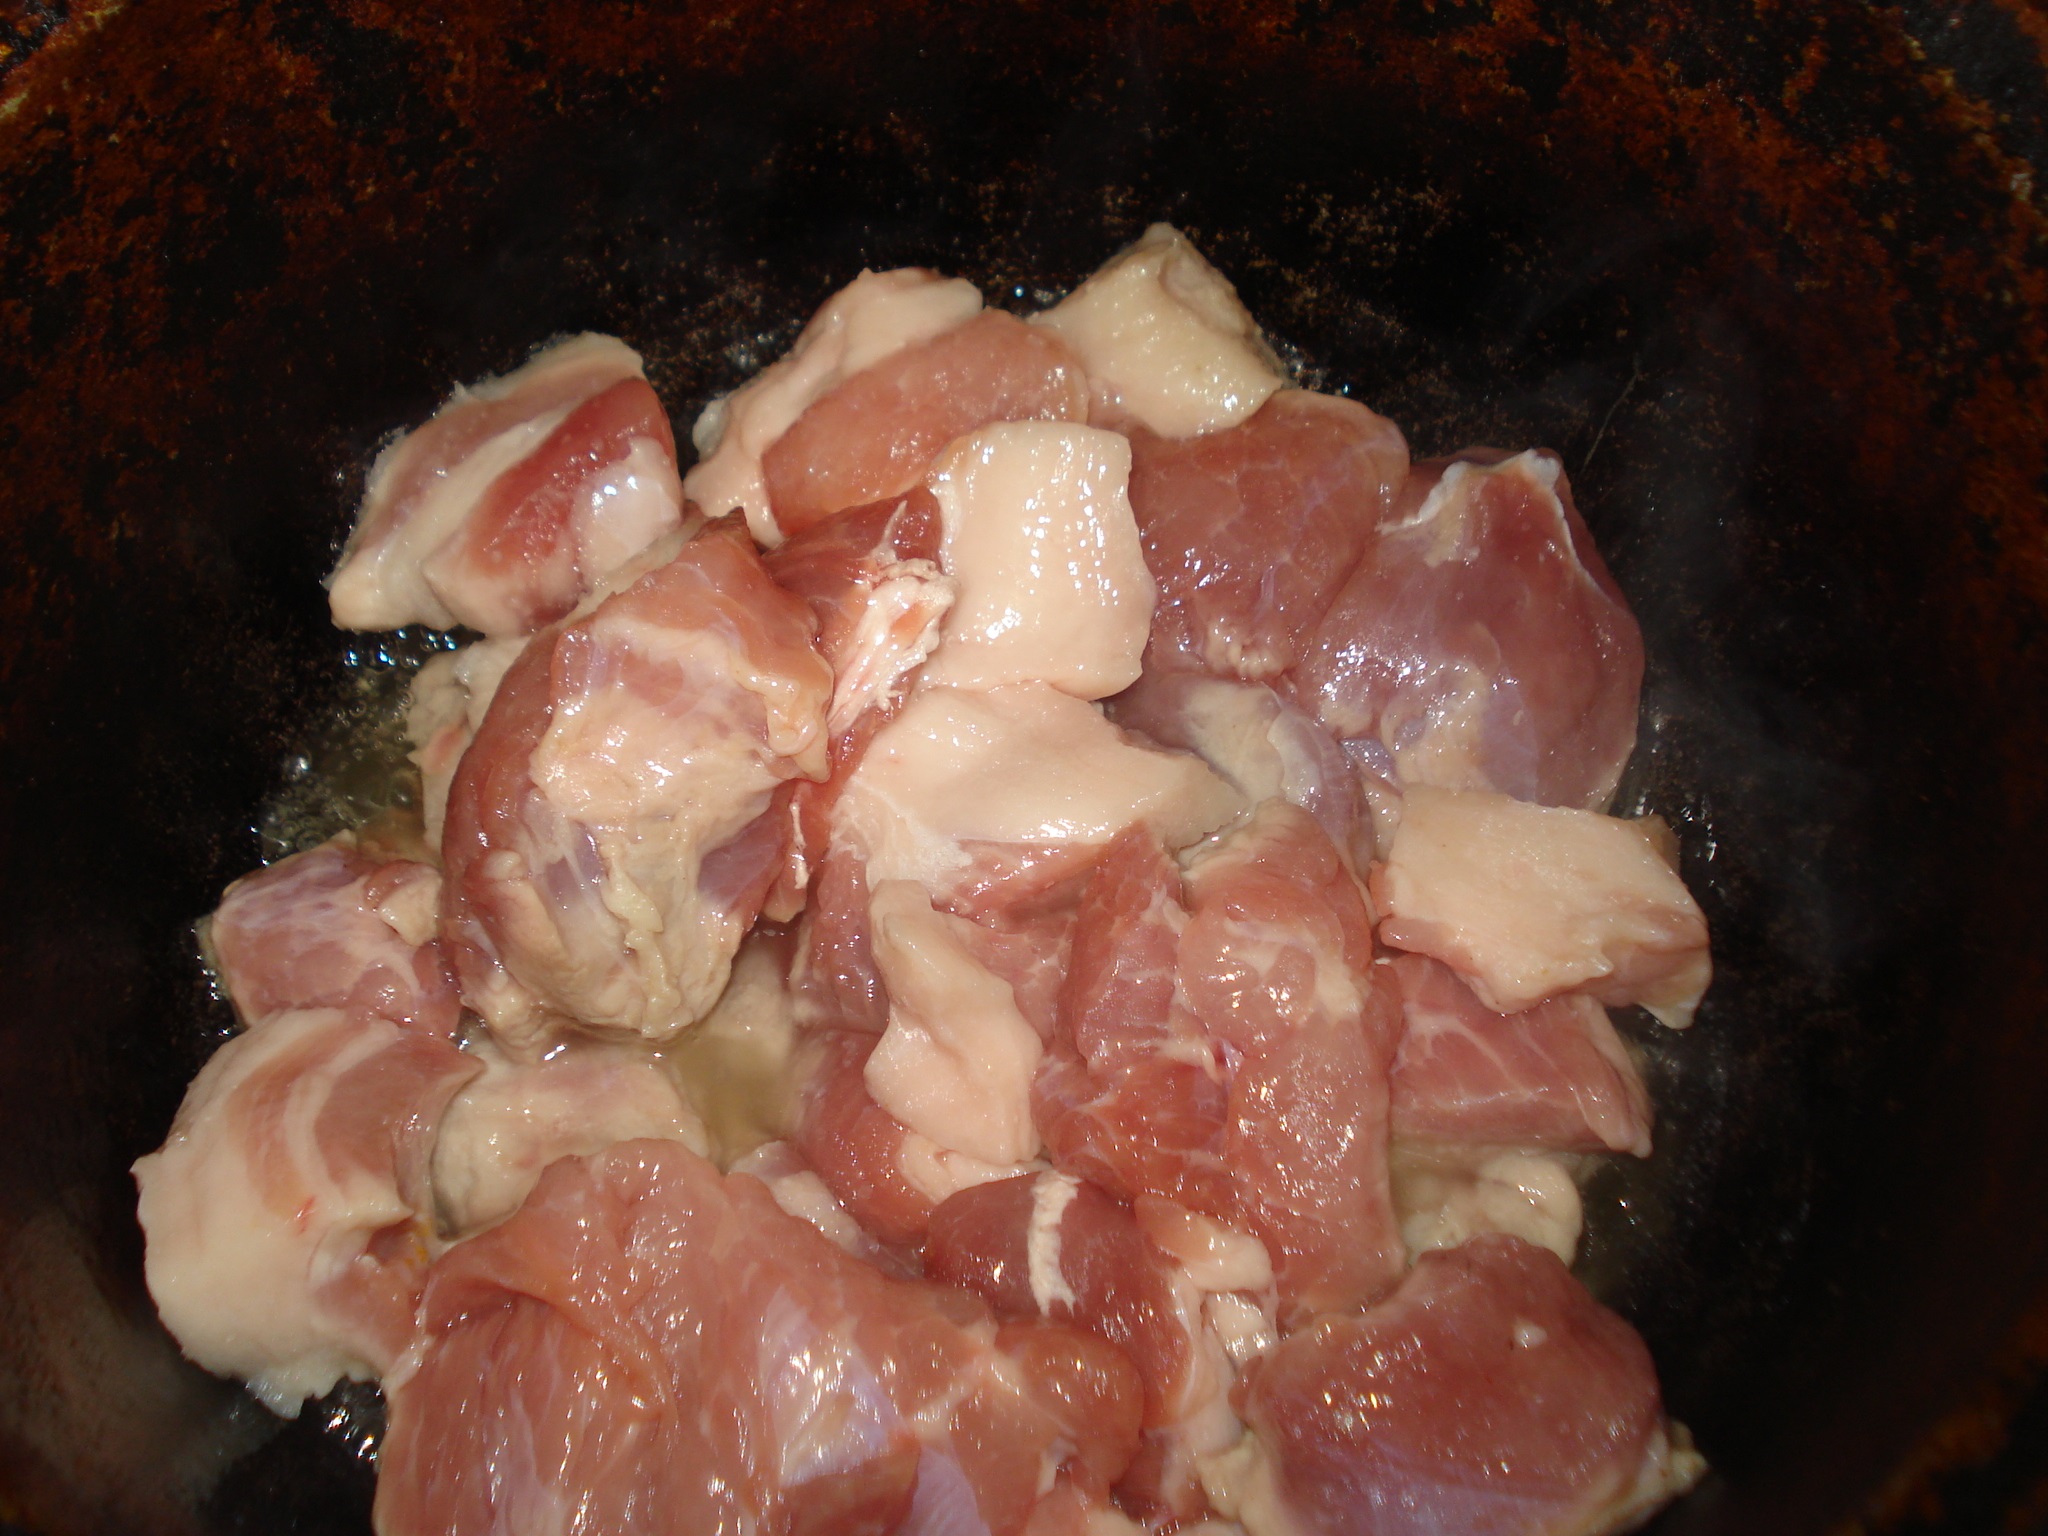 Tocana cu carne de porc la tuci